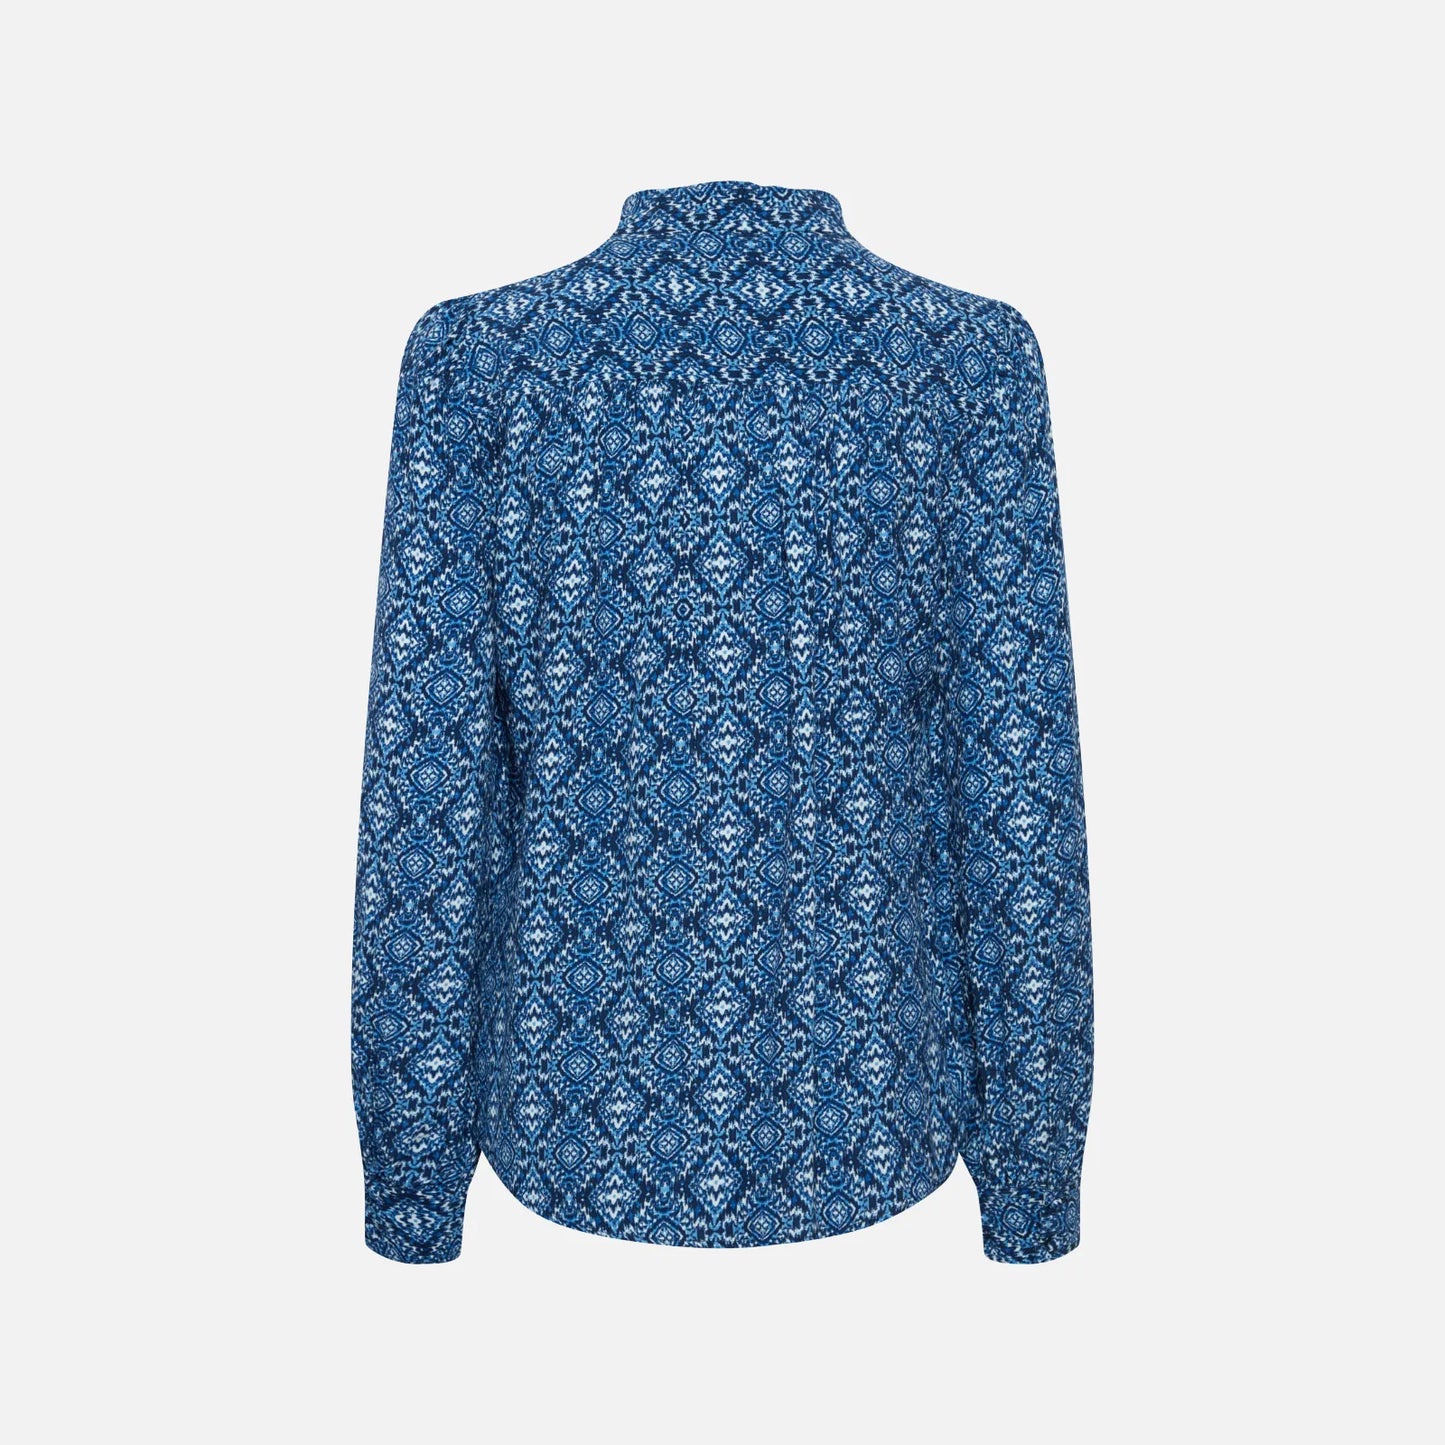 Irnoella Skjorte fra Atelier Reve i Blue Ikat bagfra